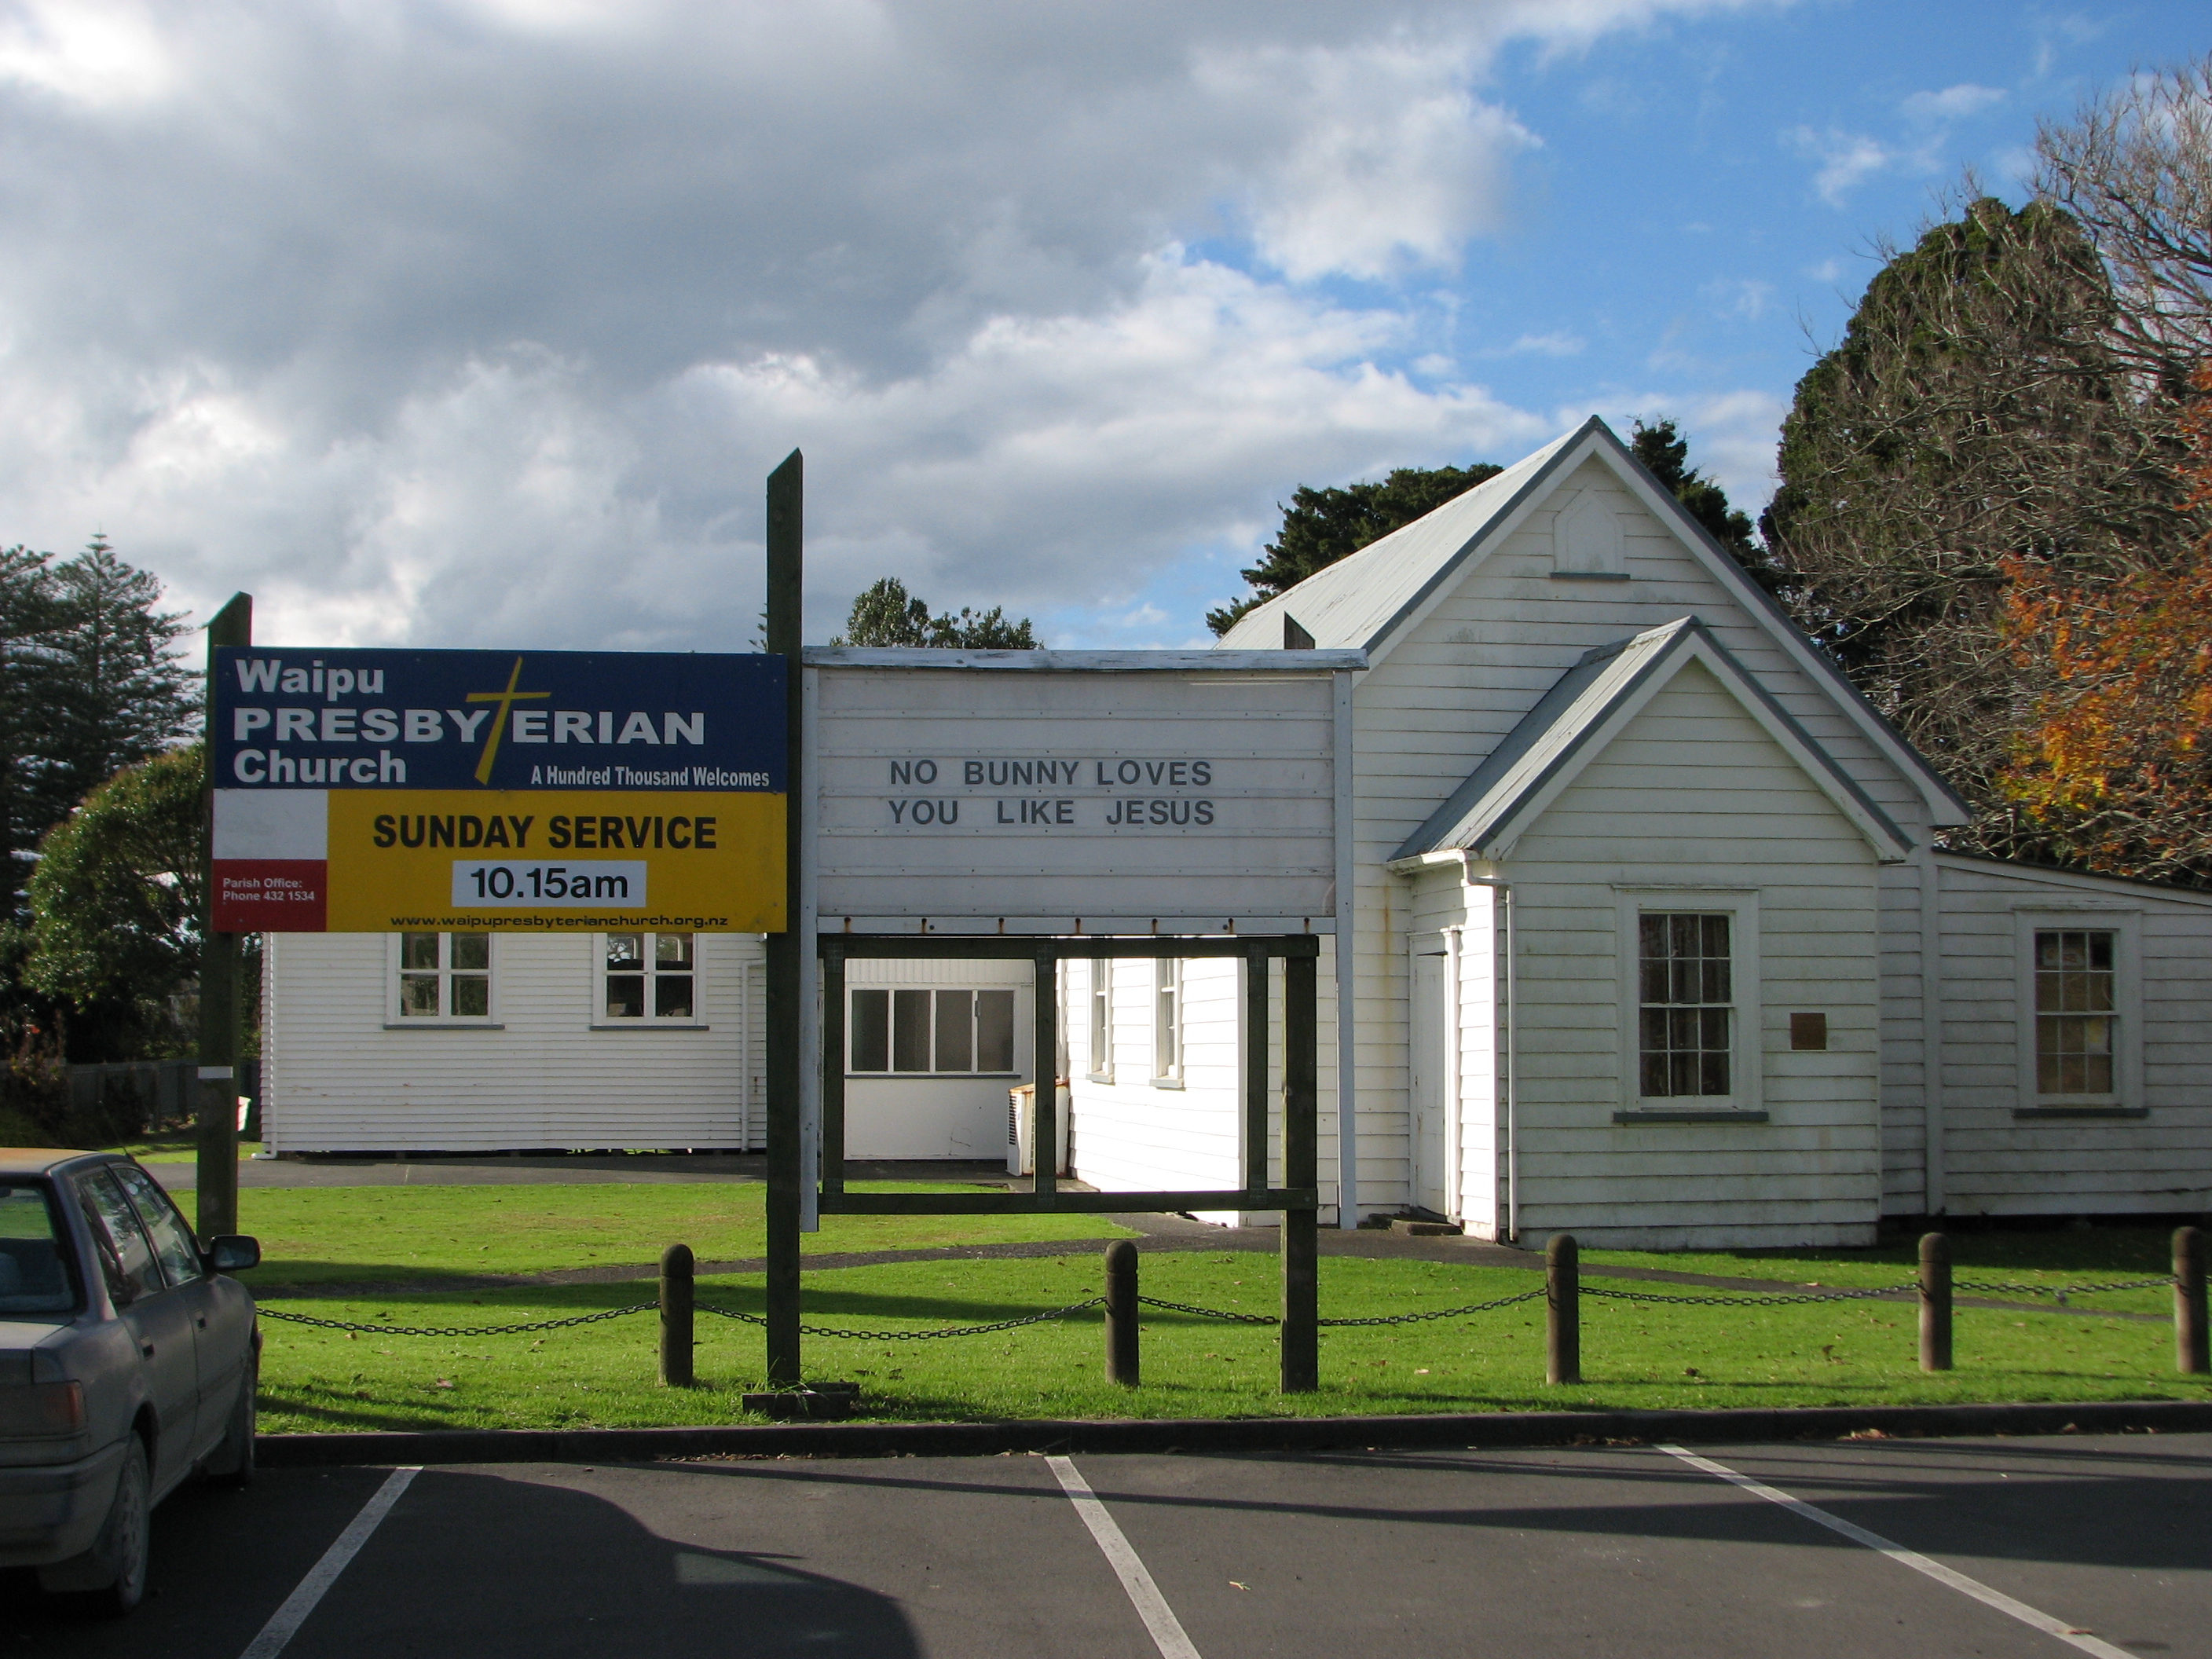 Waipu Presbyterian Church